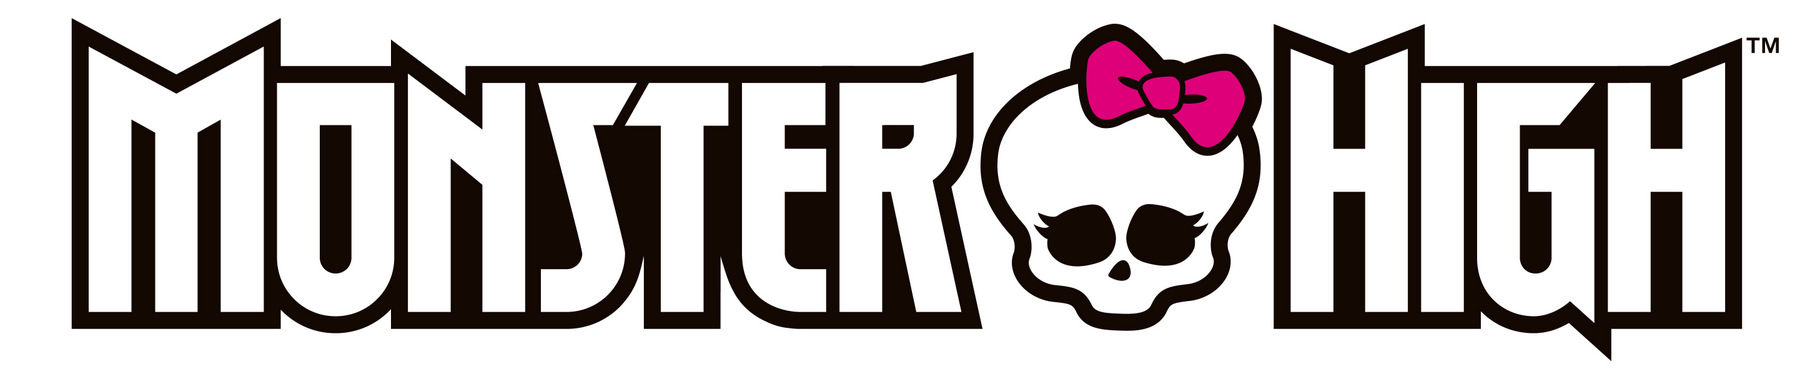 monster high logo 2015